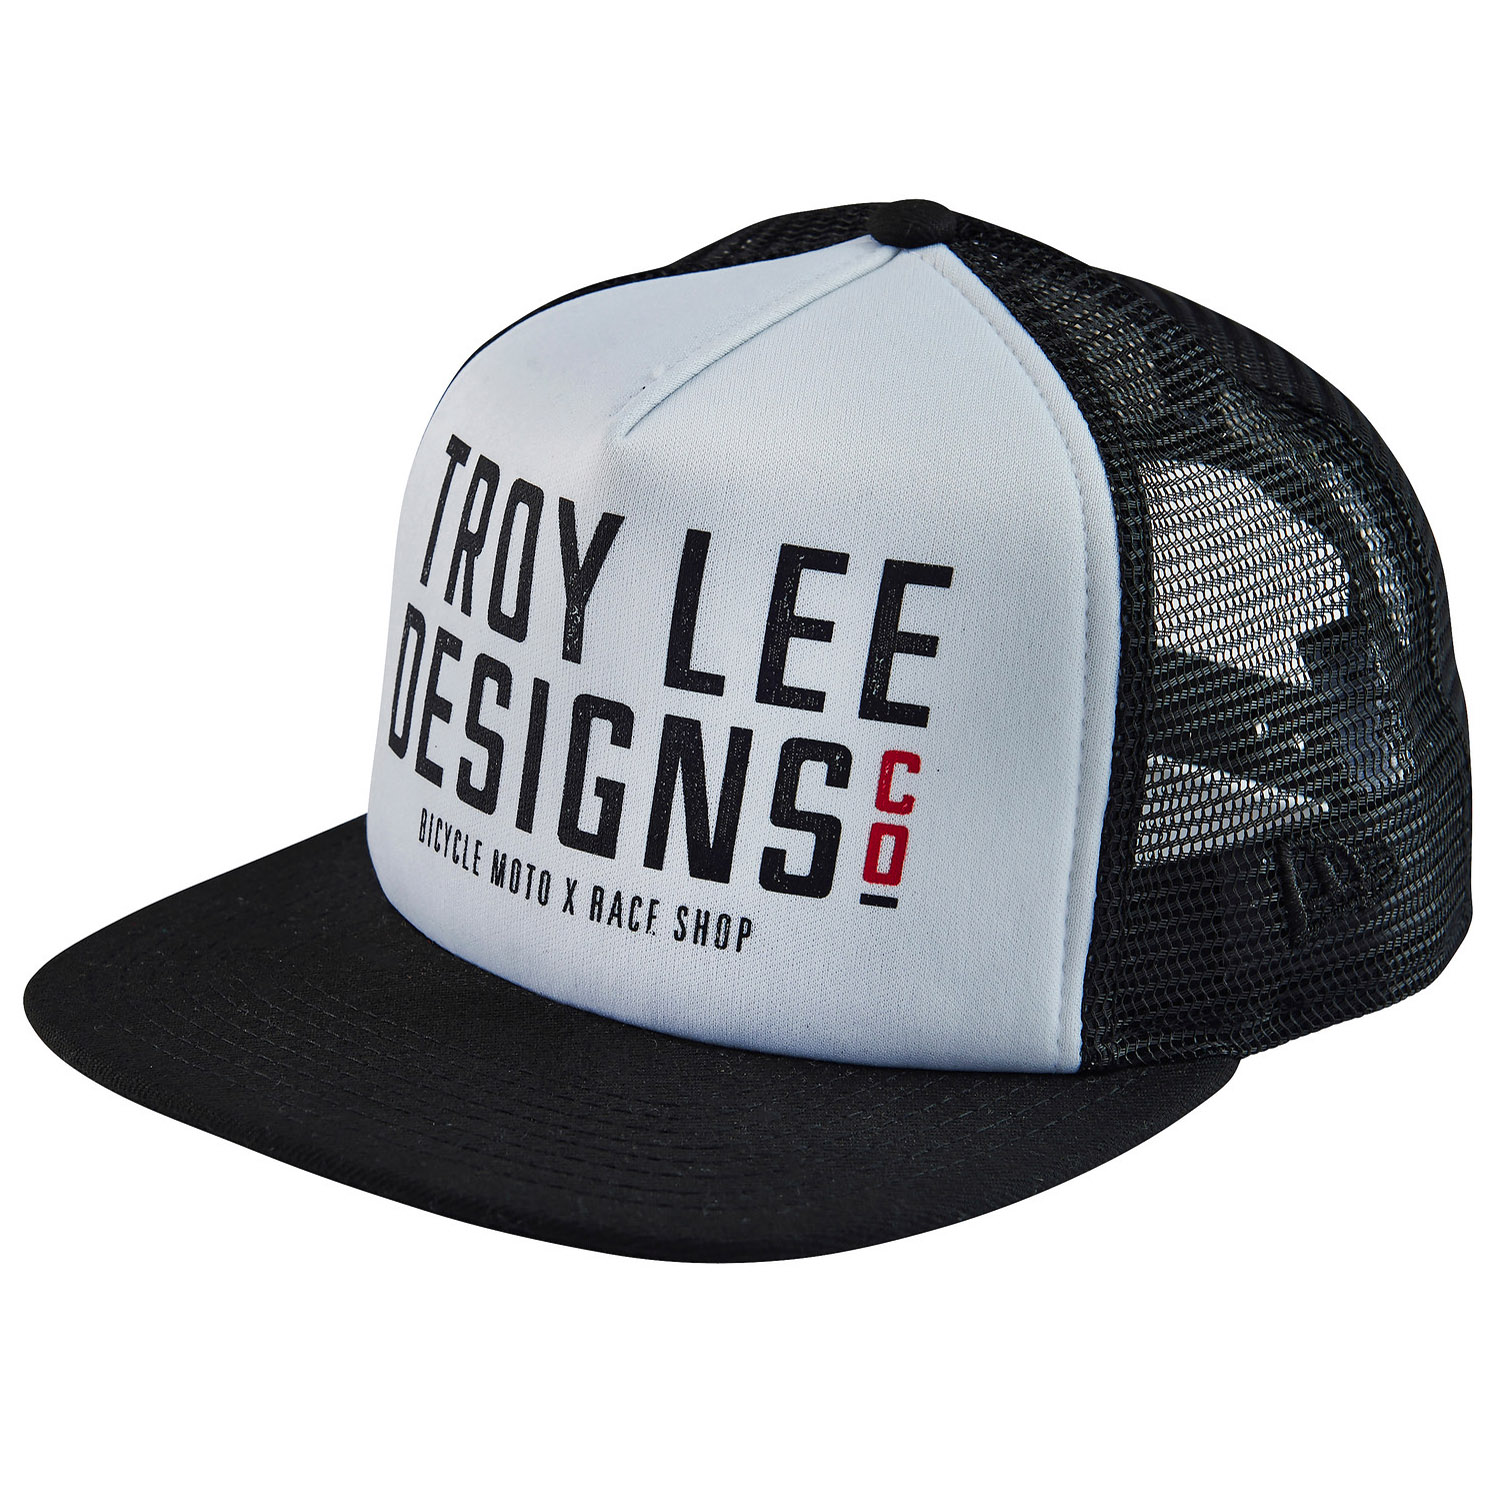 Troy Lee Designs Cap Step Up Black